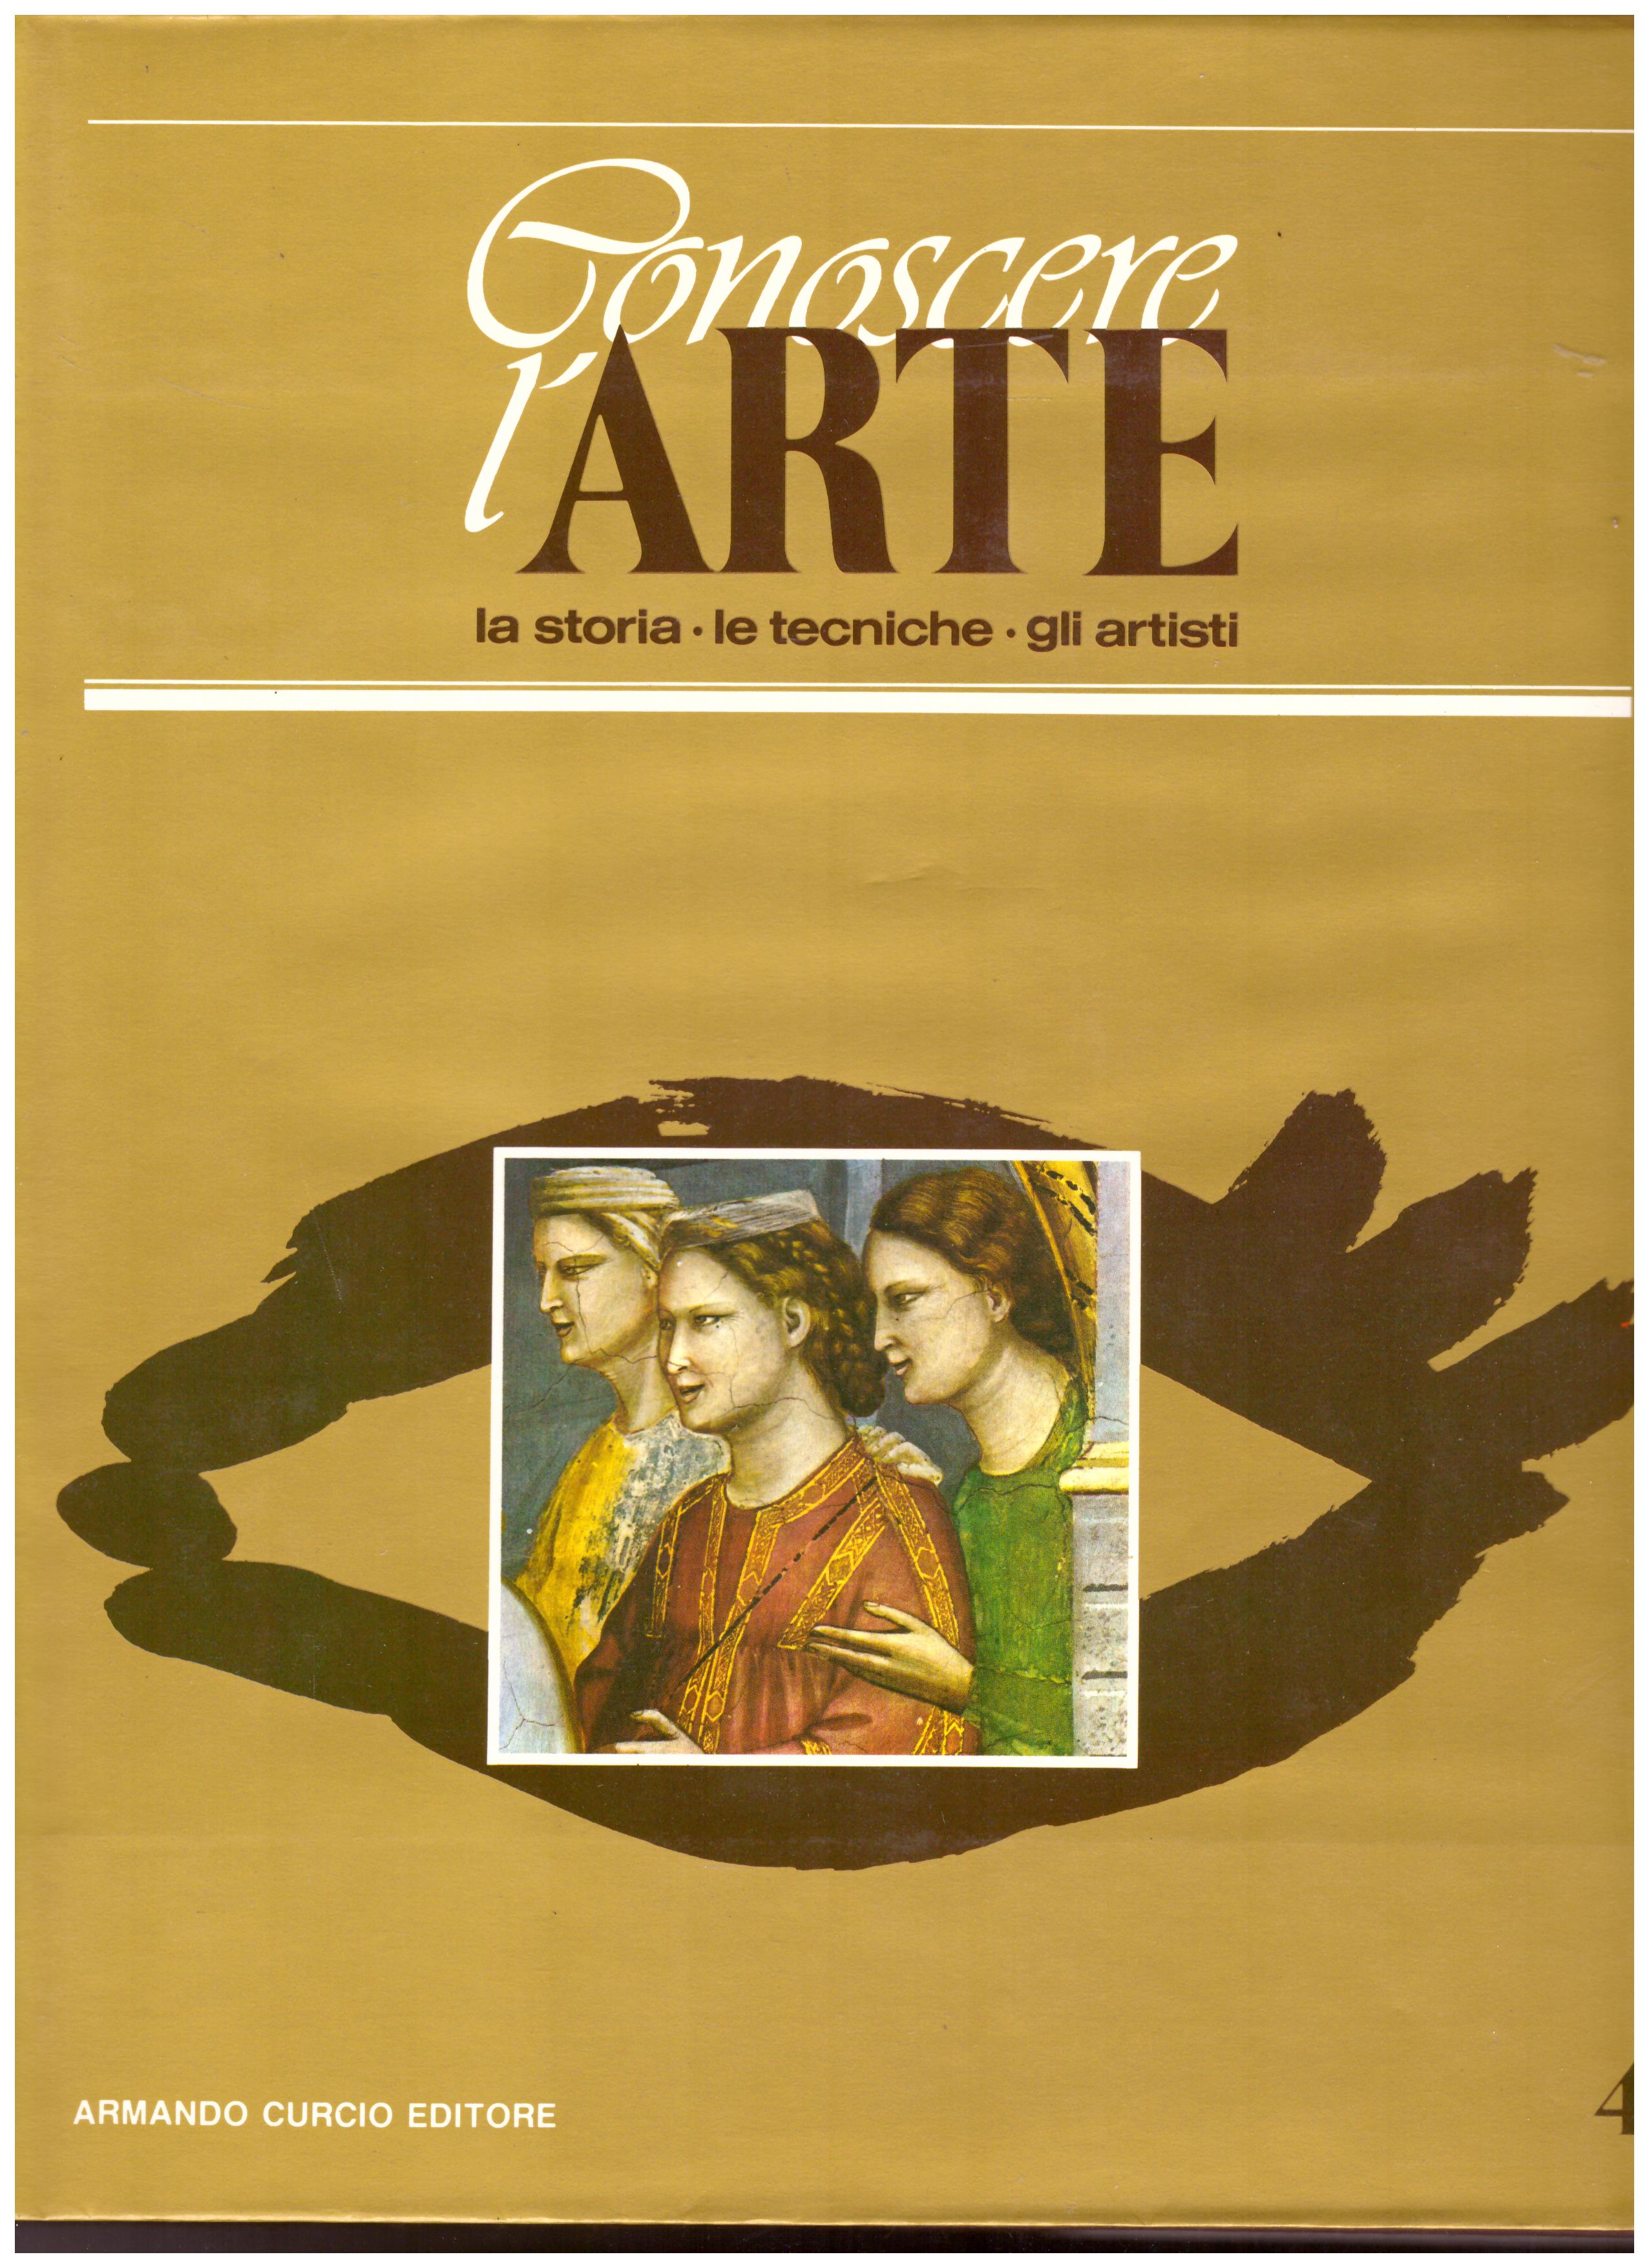 Titolo: Conoscere l'arte n.4  Autore: AA.VV.  Editore: Armando Curcio editore 1986